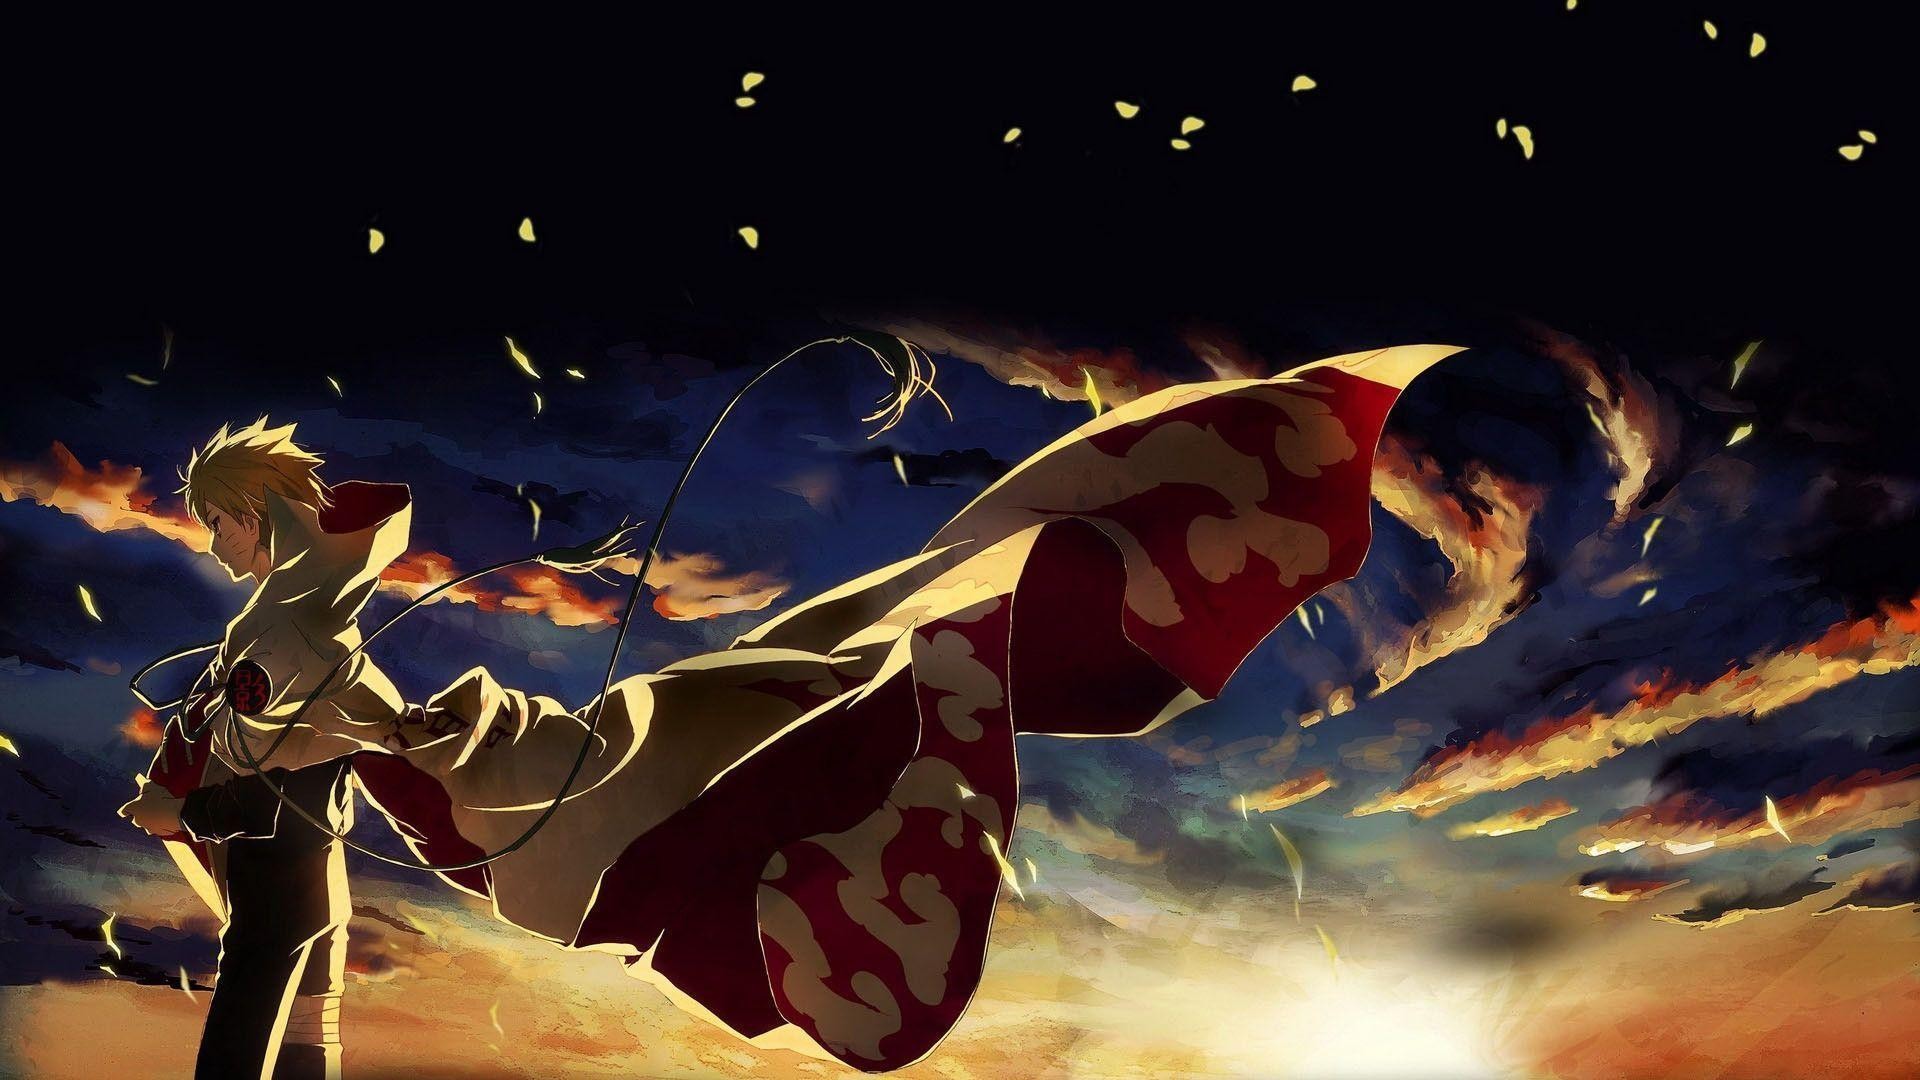 fond d'écran anime 1600x900,oeuvre de cg,personnage fictif,ciel,super héros,illustration